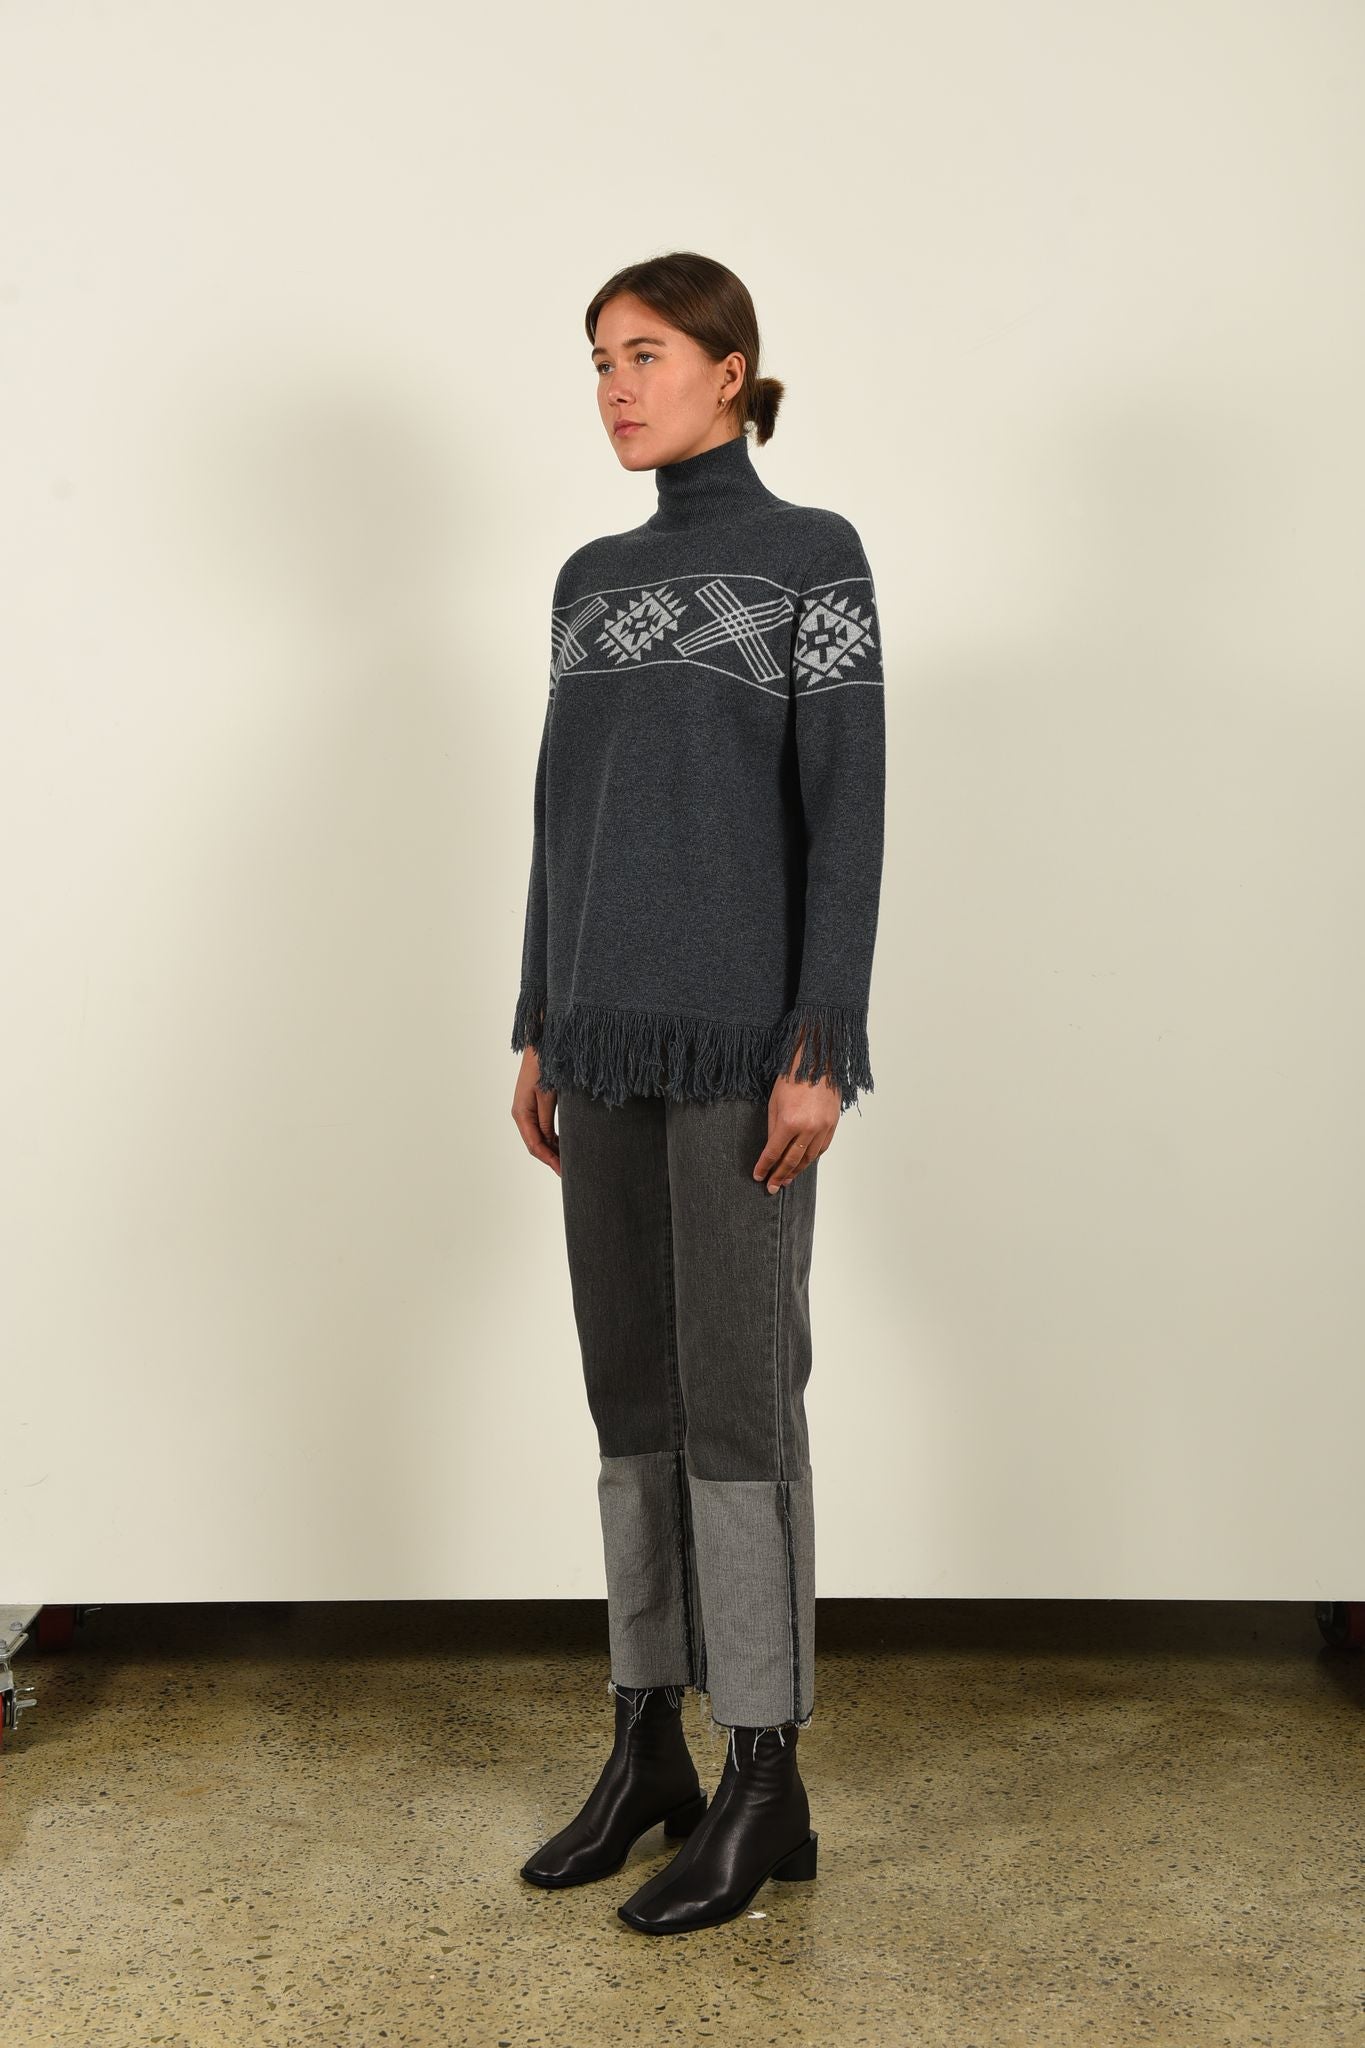 barry made leslie grey aztec knit with turtleneck and fringe trim side